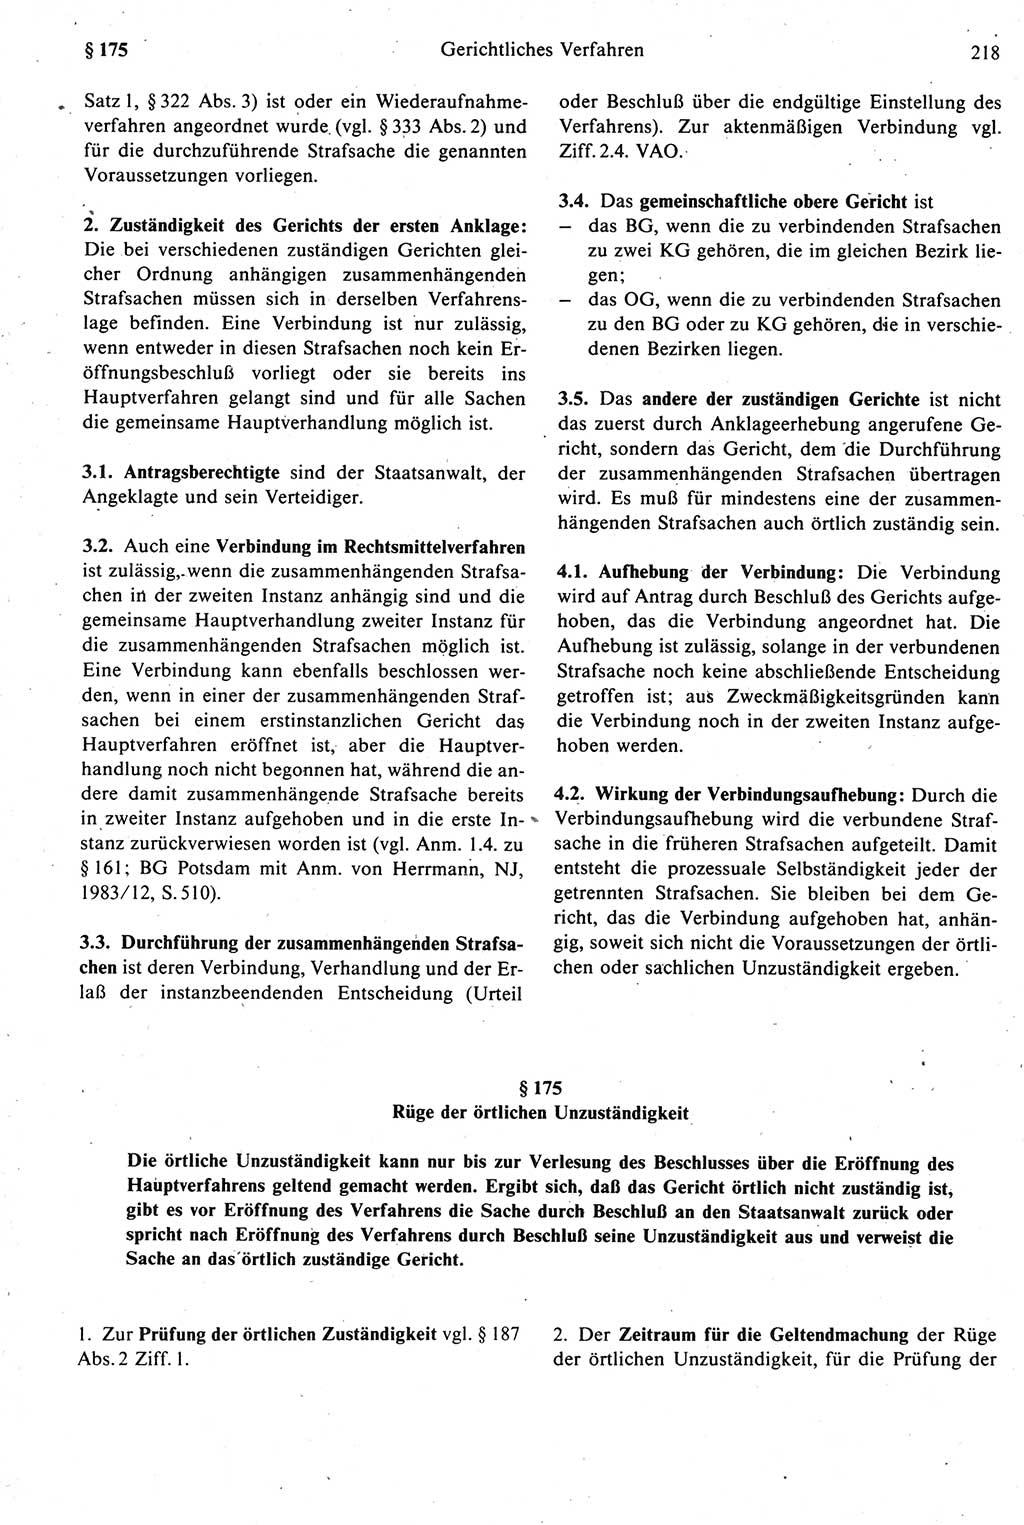 Strafprozeßrecht der DDR [Deutsche Demokratische Republik], Kommentar zur Strafprozeßordnung (StPO) 1987, Seite 218 (Strafprozeßr. DDR Komm. StPO 1987, S. 218)